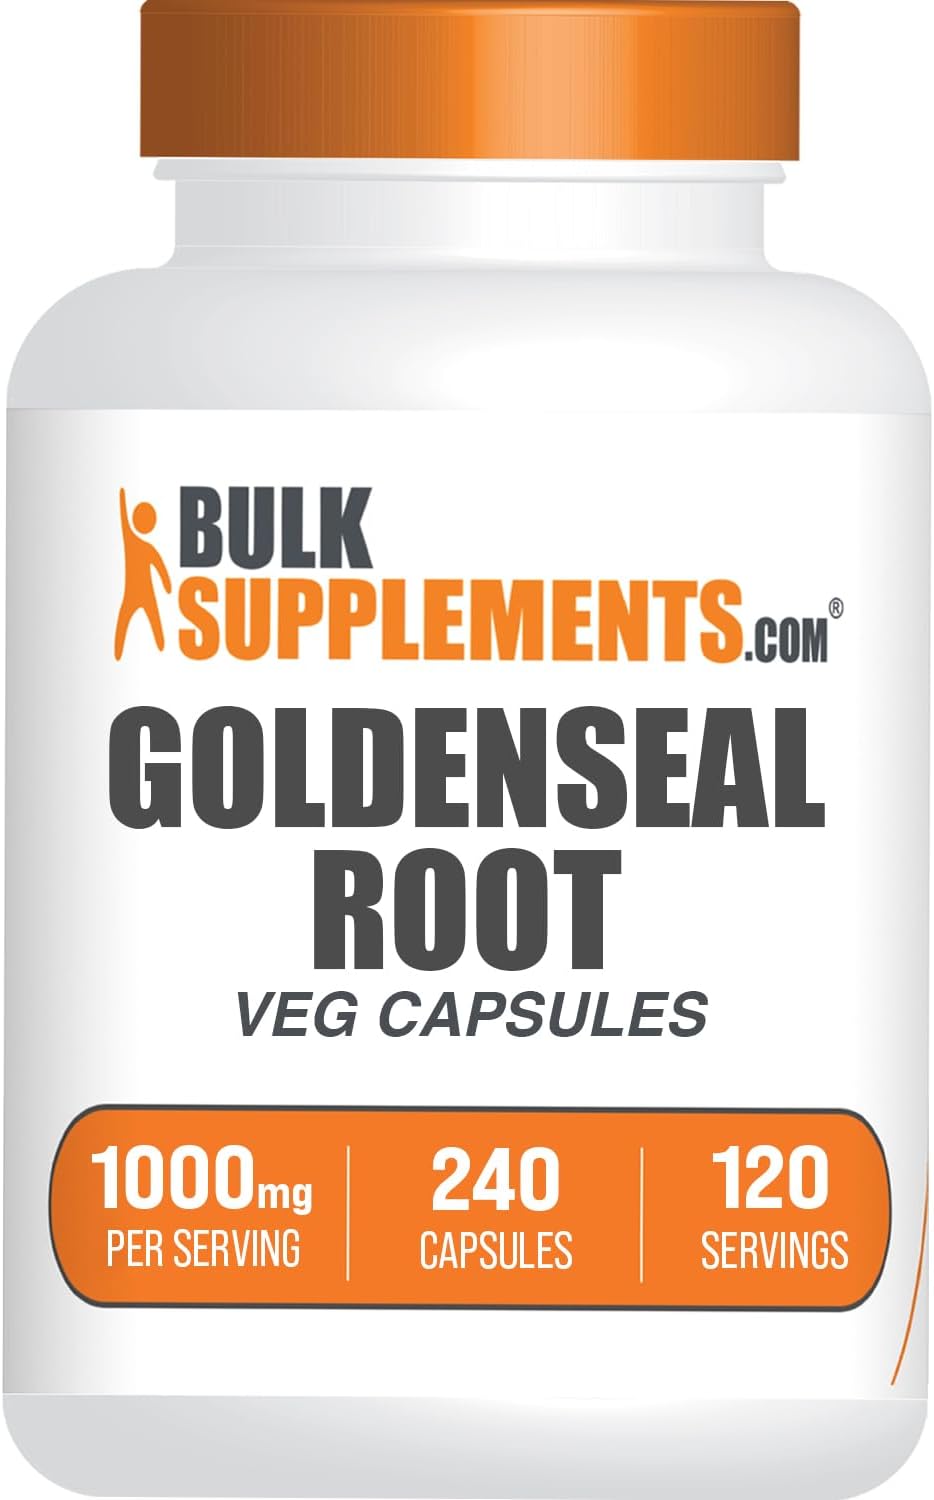 BULKSUPPLEMENTS.COM Goldenseal Root Capsules - Herbal Supplement, Sourced from Golden Seal Root - Vegan & Gluten Free, 1 Capsule per Serving, 240 Veg Capsules (Pack of 1)